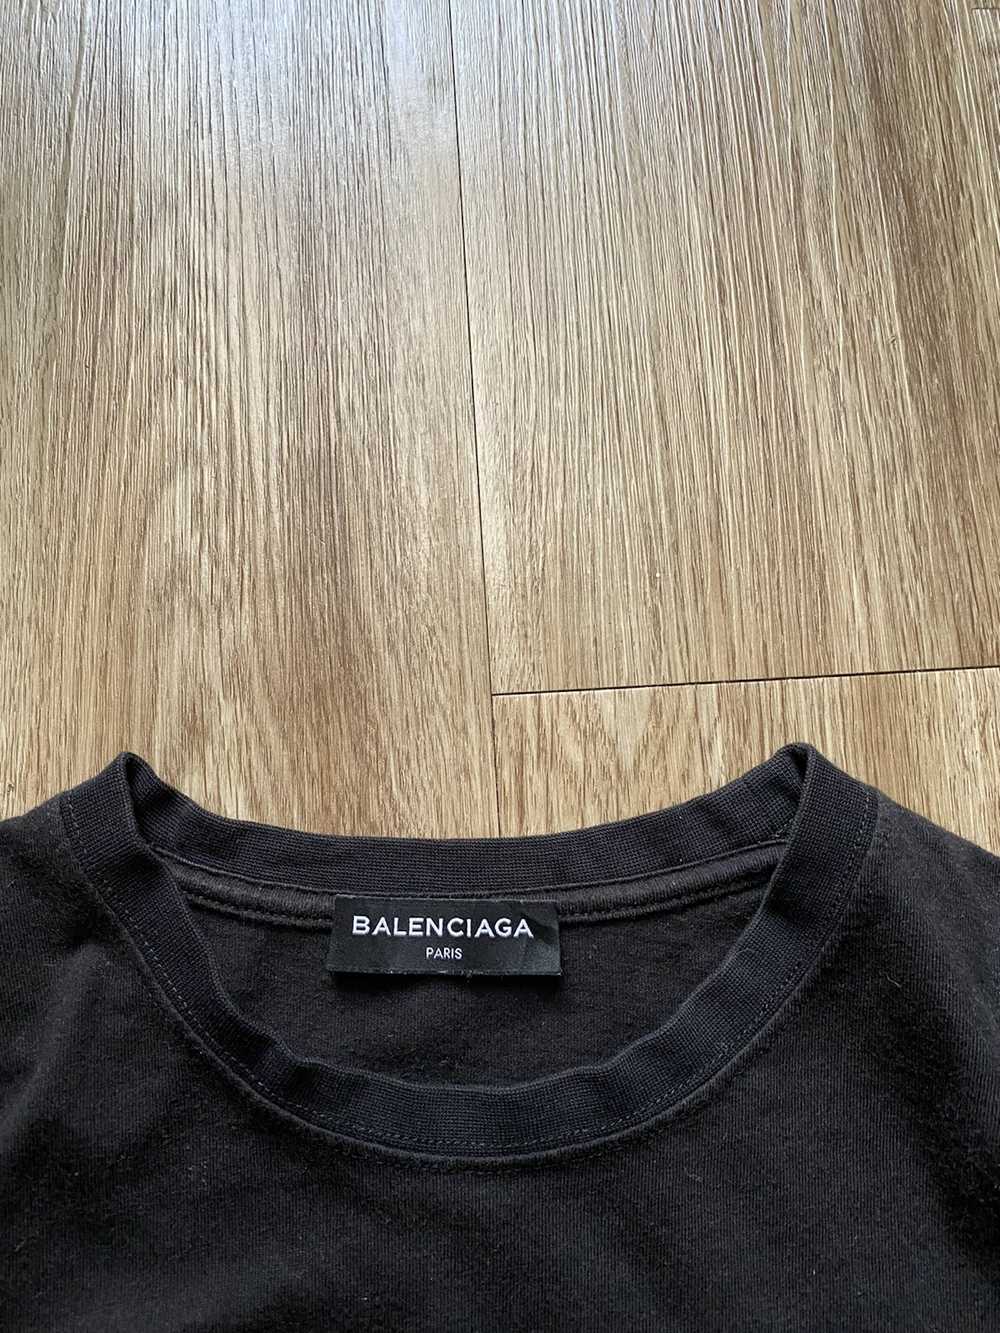 Balenciaga BALENCIAGA SS18 SINNERS TEE - image 9